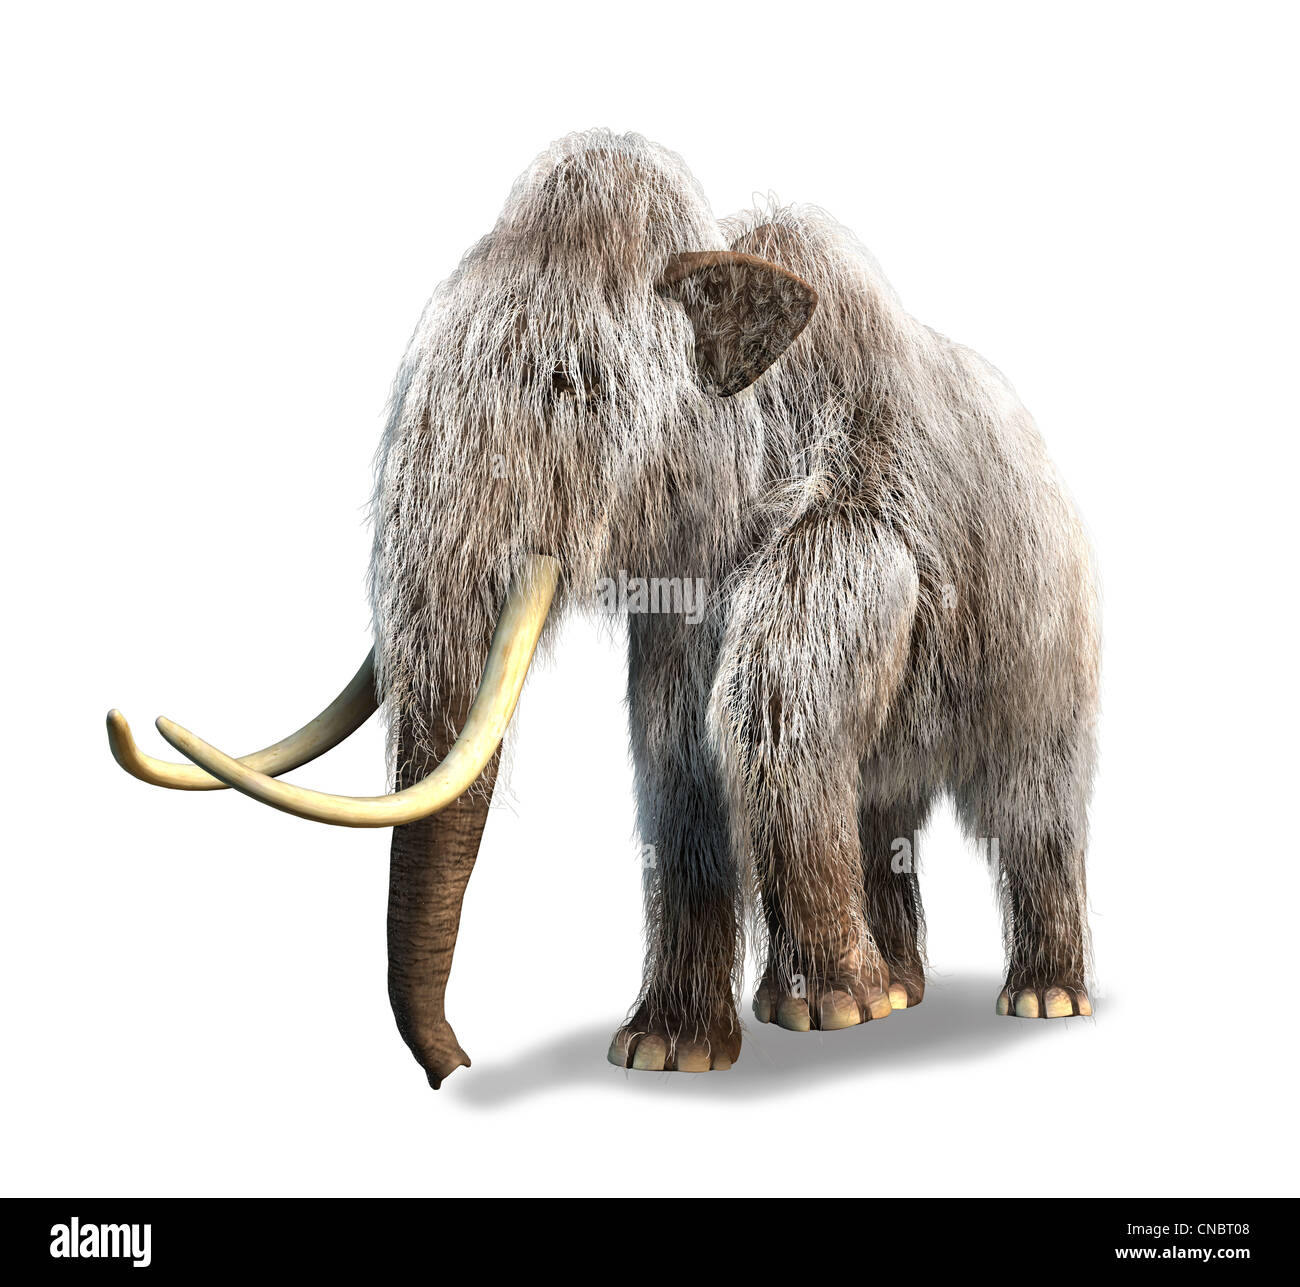 3 fotorealistico D rendering di un mammut. Su sfondo bianco con ombra e percorso di clipping incluso. Foto Stock